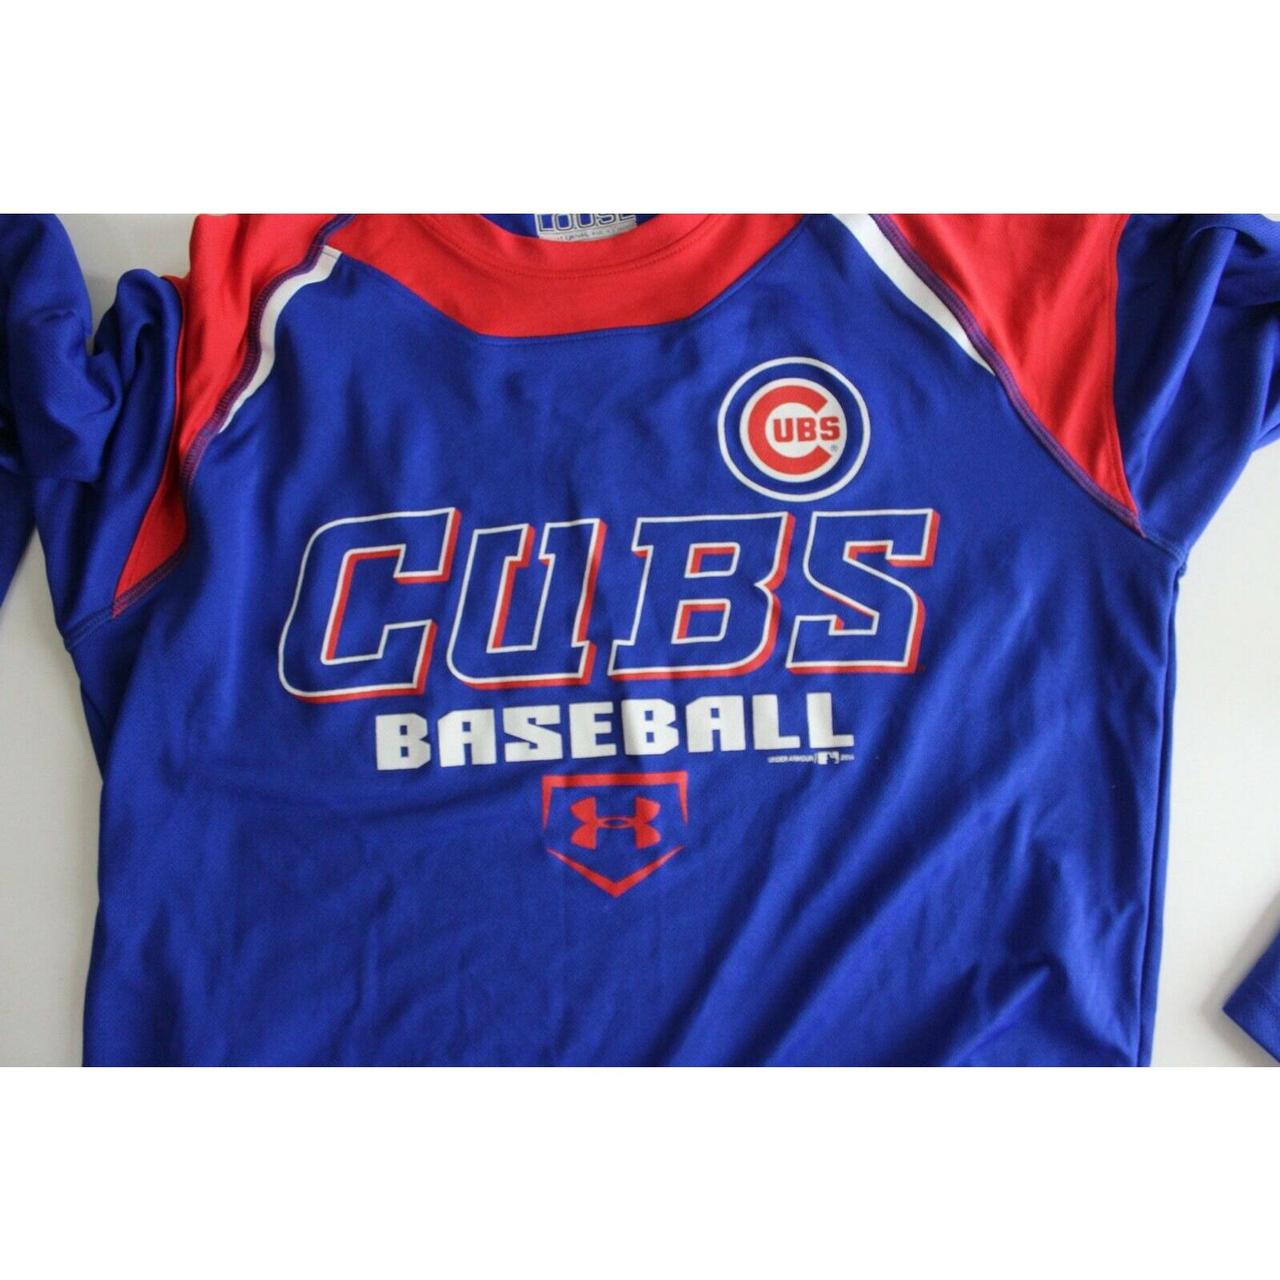 Under Armour Chicago Cubs Baseball Long Sleeve Shirt - Depop